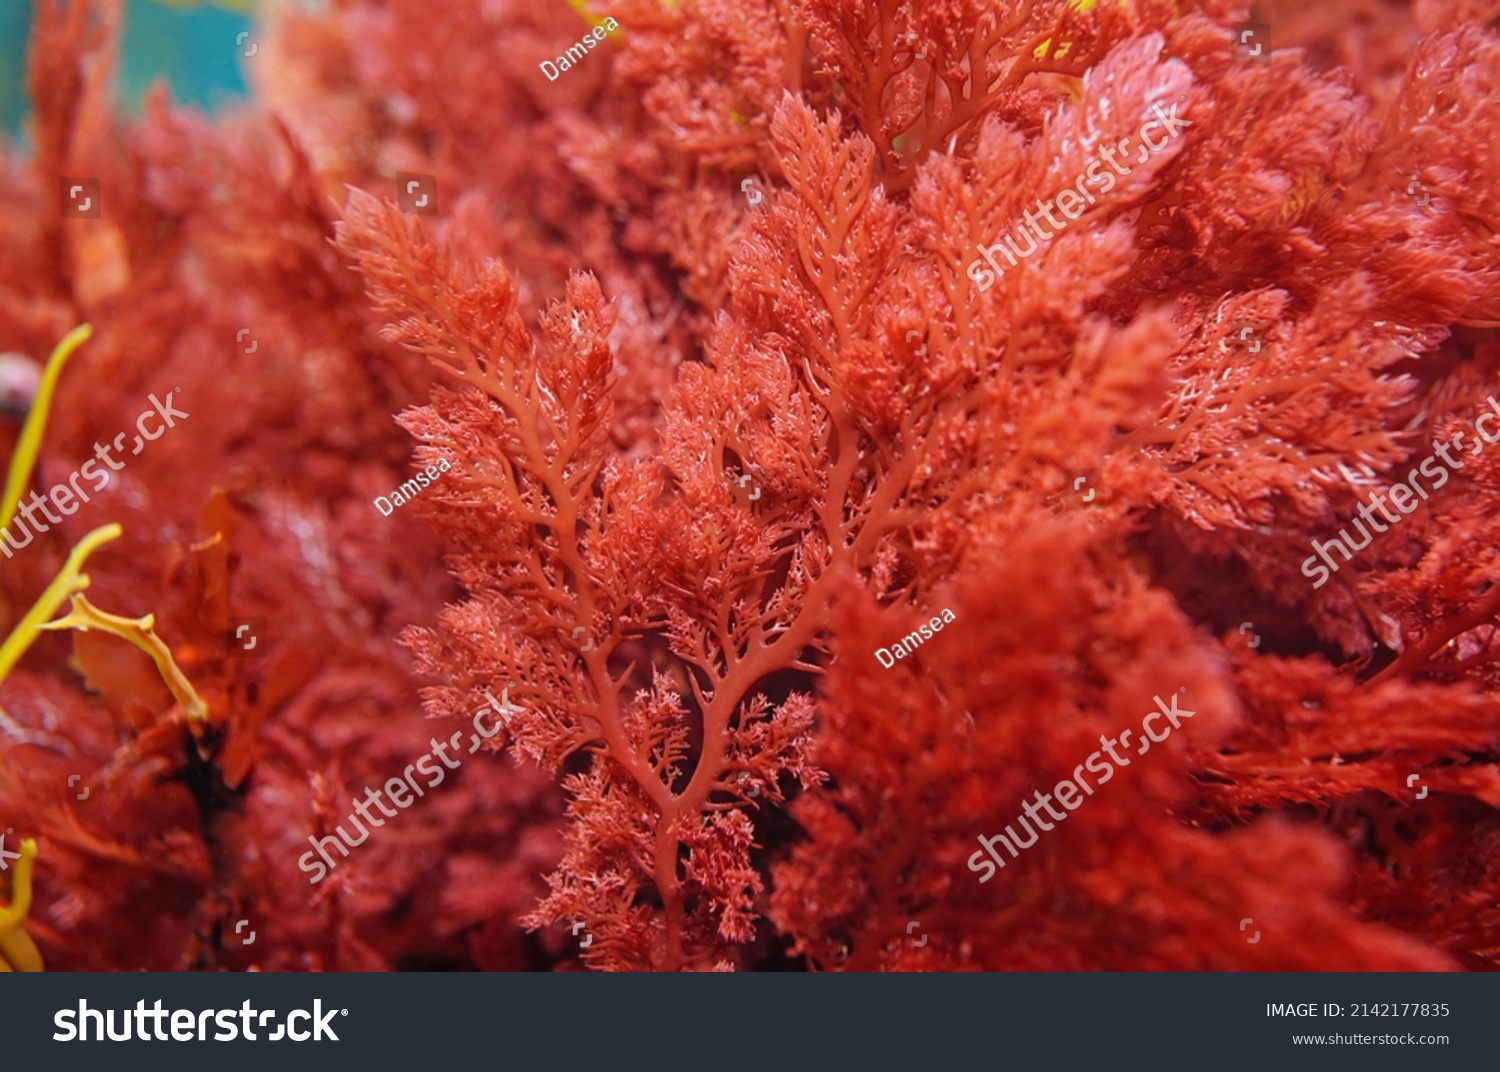 Red alga Plocamium cartilagineum close-up, underwater in the Atlantic ocean, Spain #2142177835